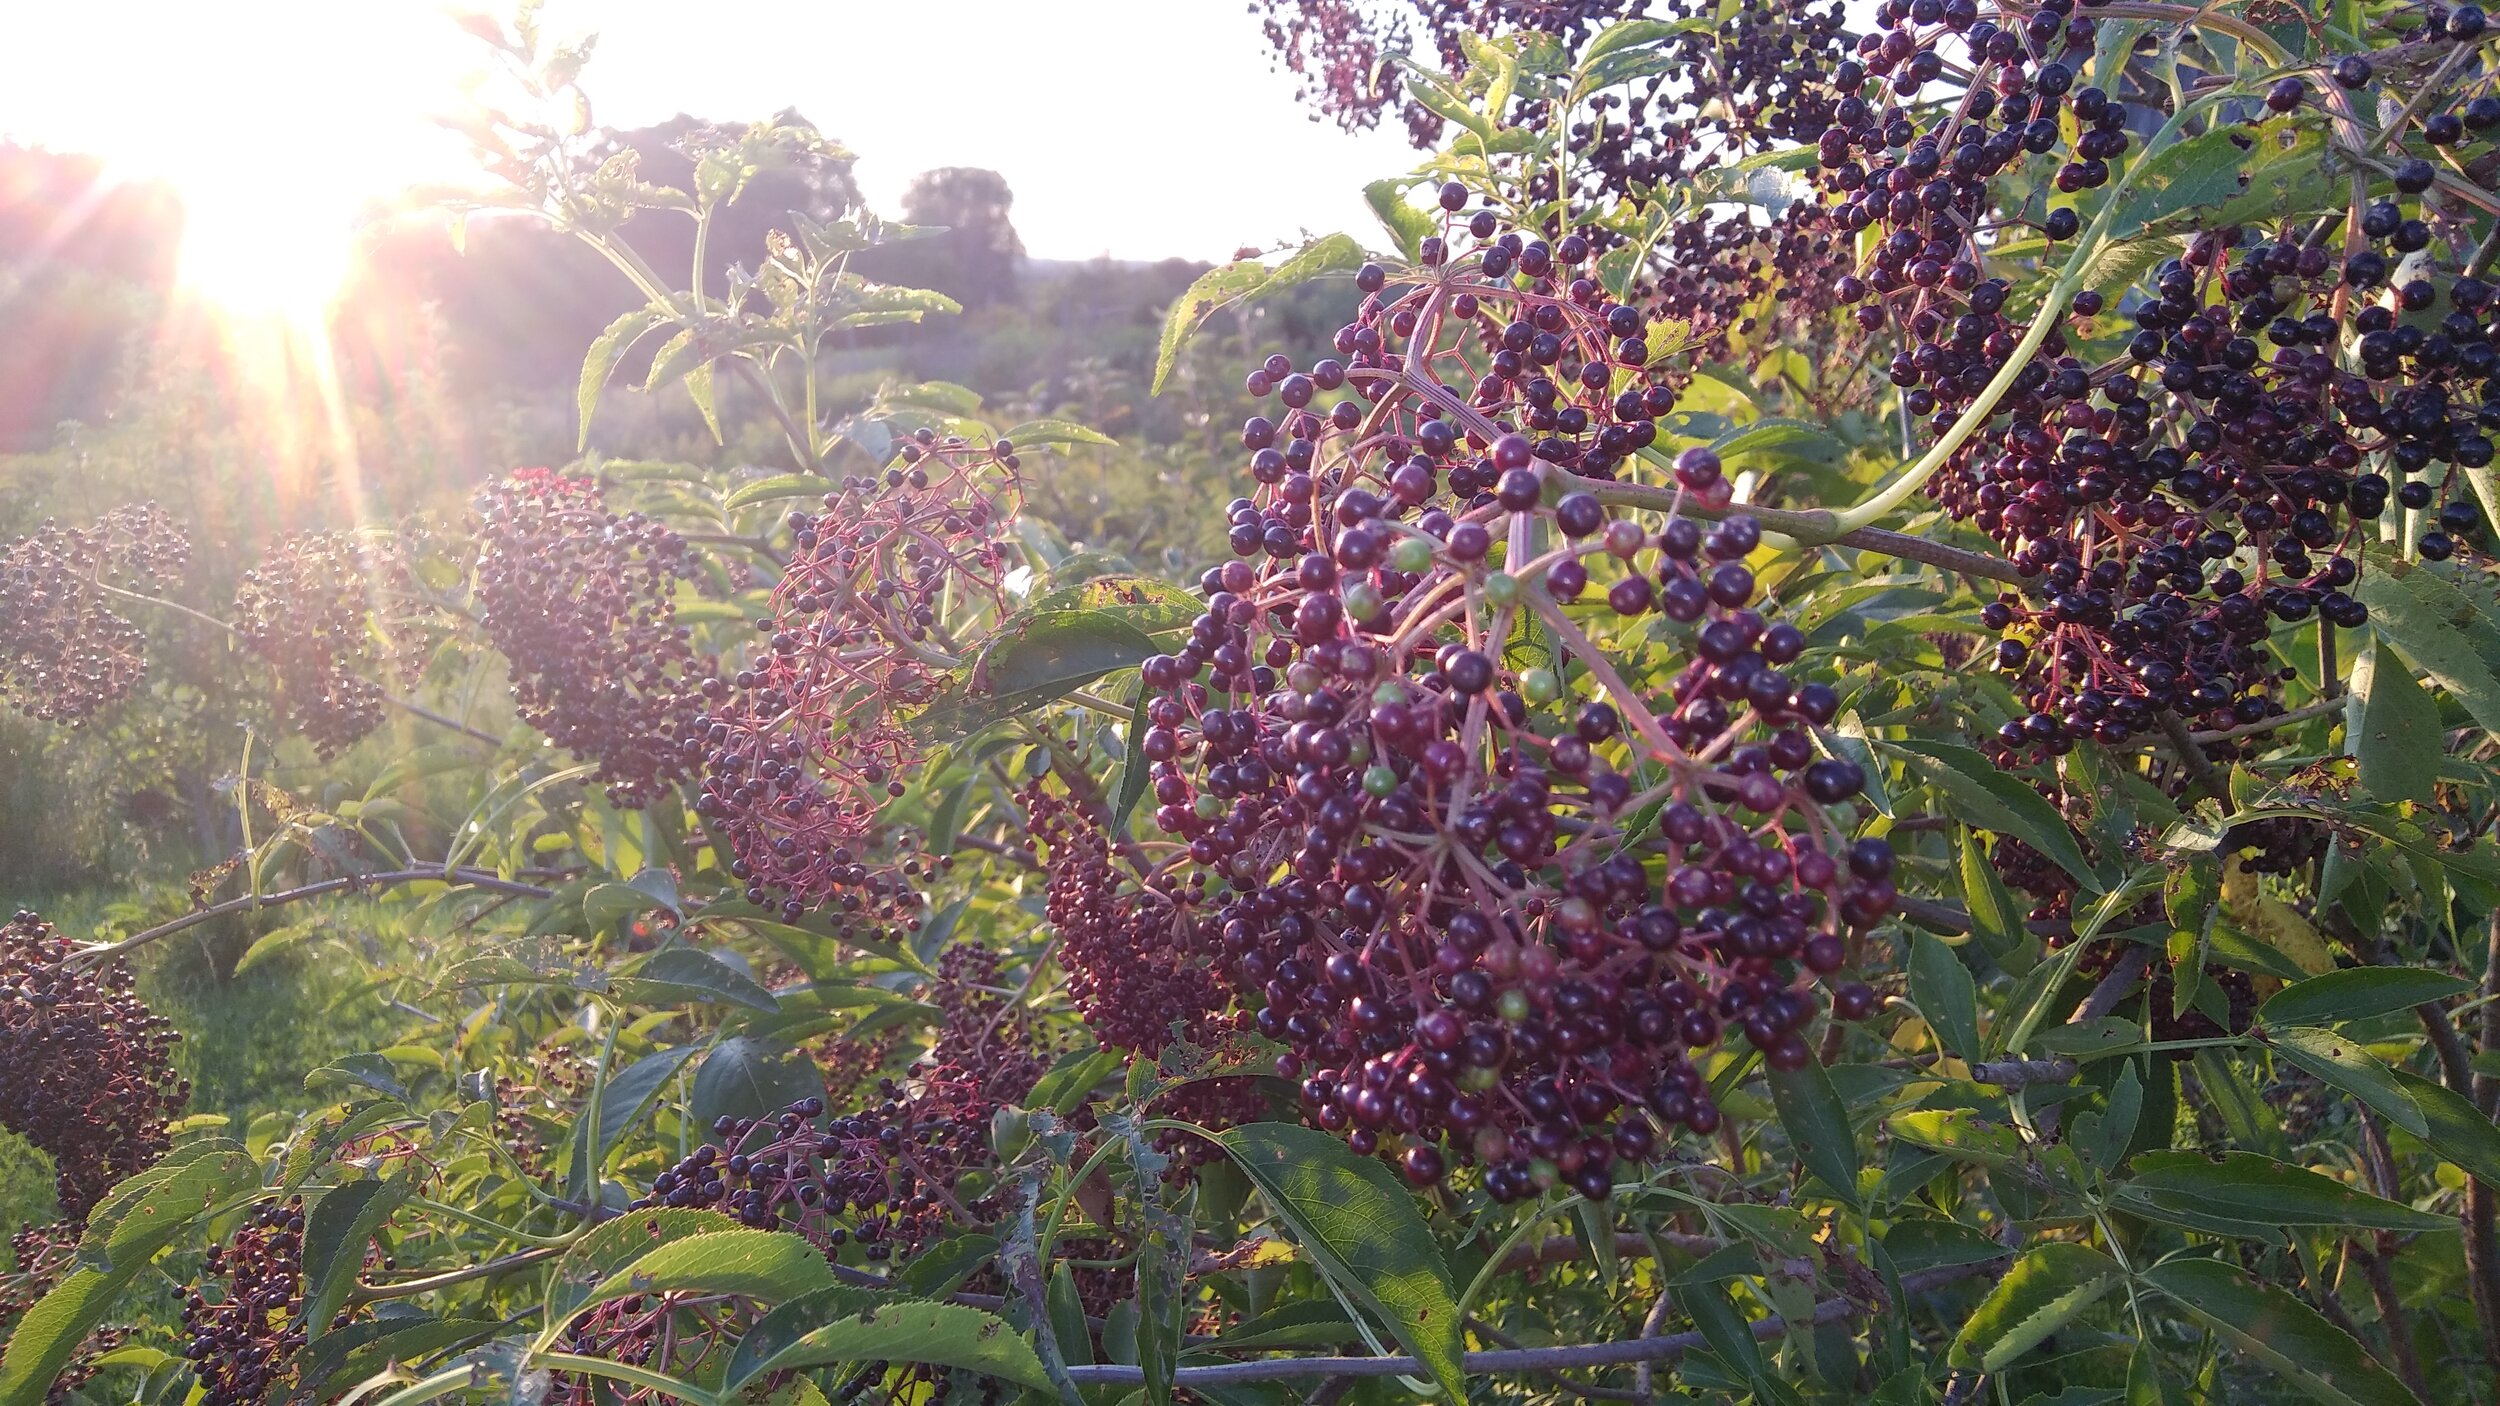 elderberry sunset 8 - 24 - 19.jpg